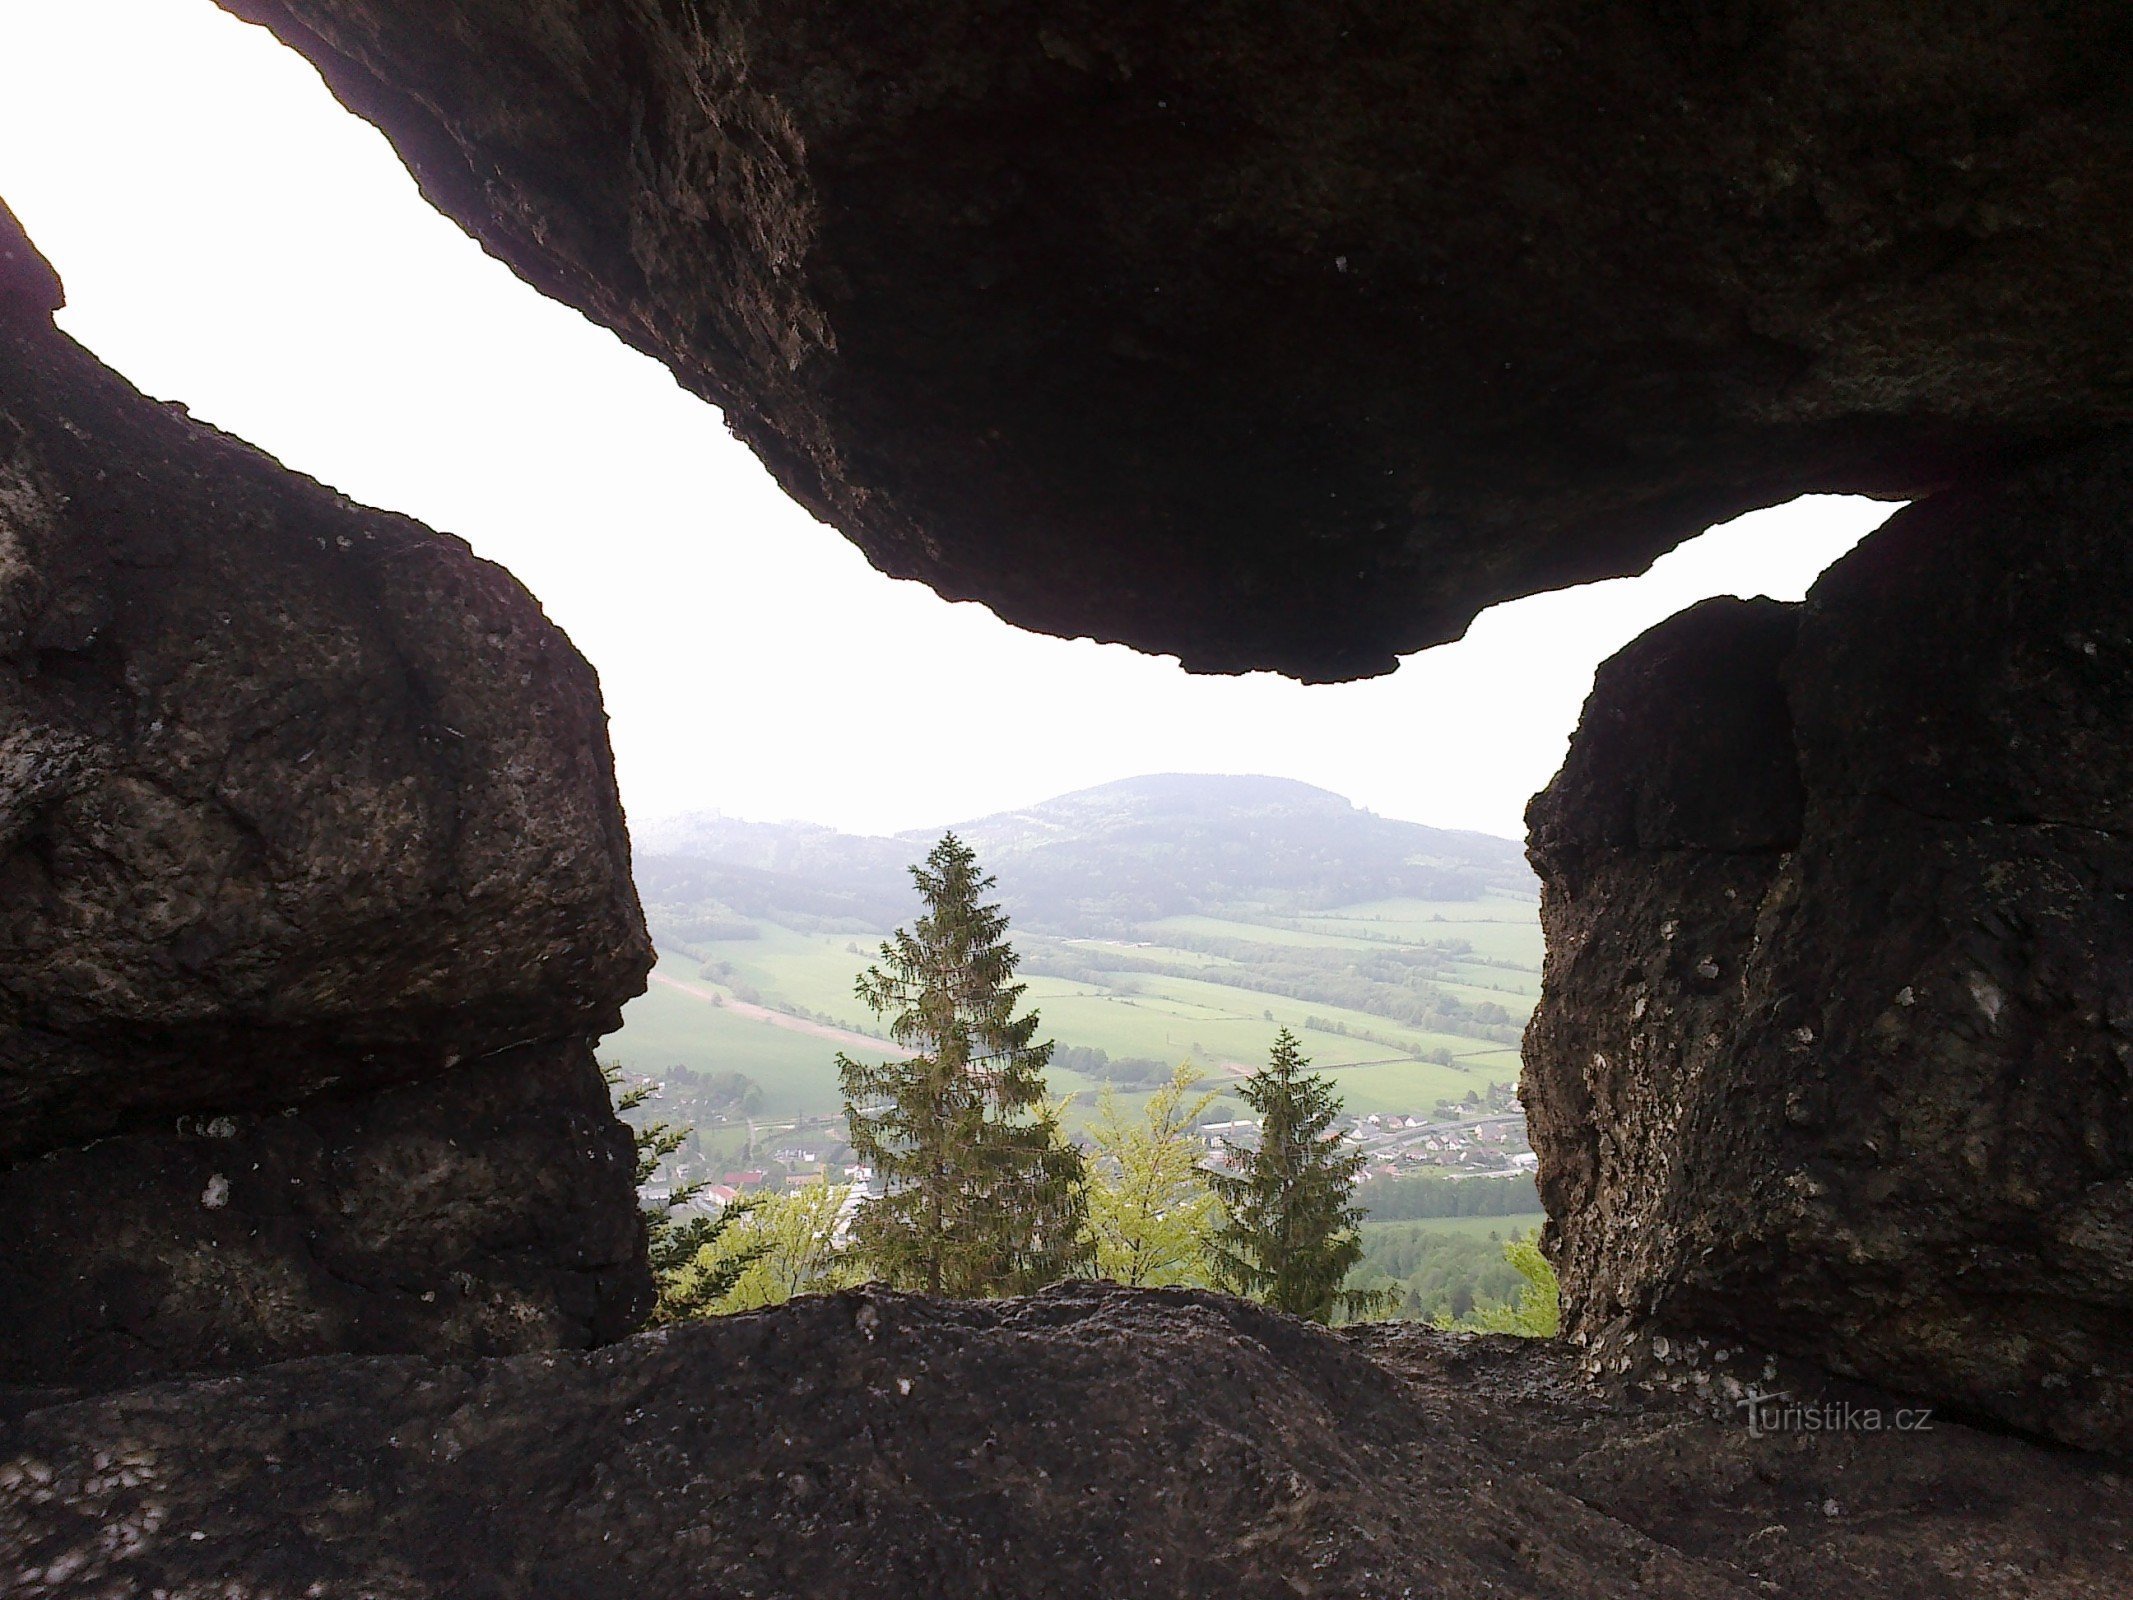 Diabelskie kamienie - skalny punkt widokowy w pobliżu Jesionika.